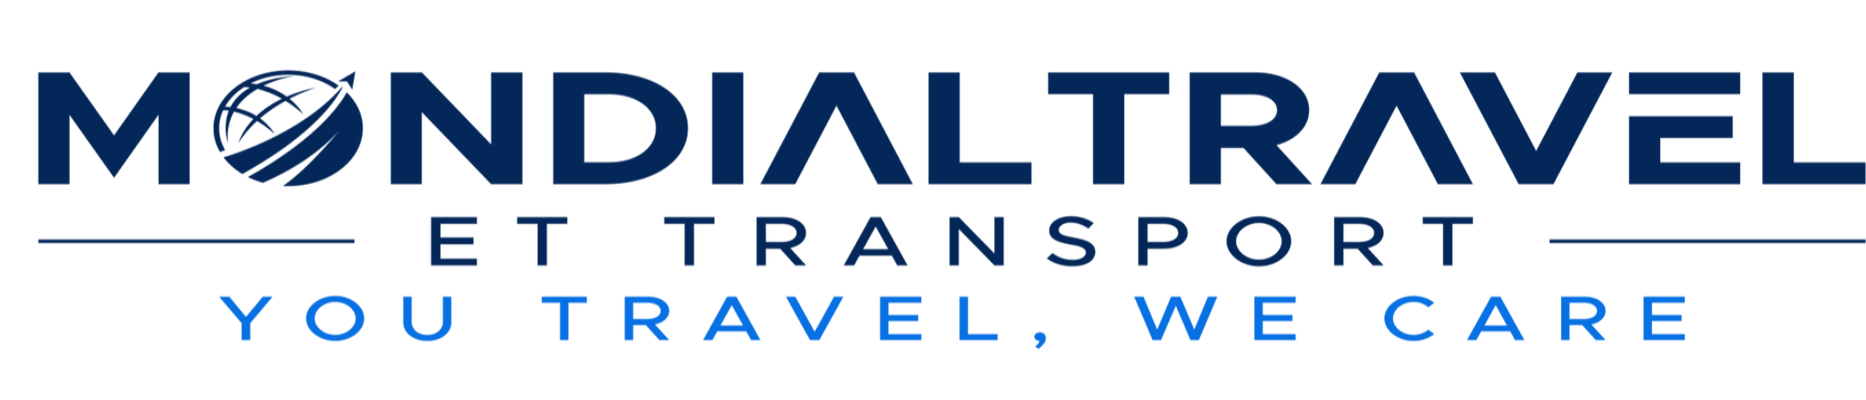 Mondial Travel et Transport